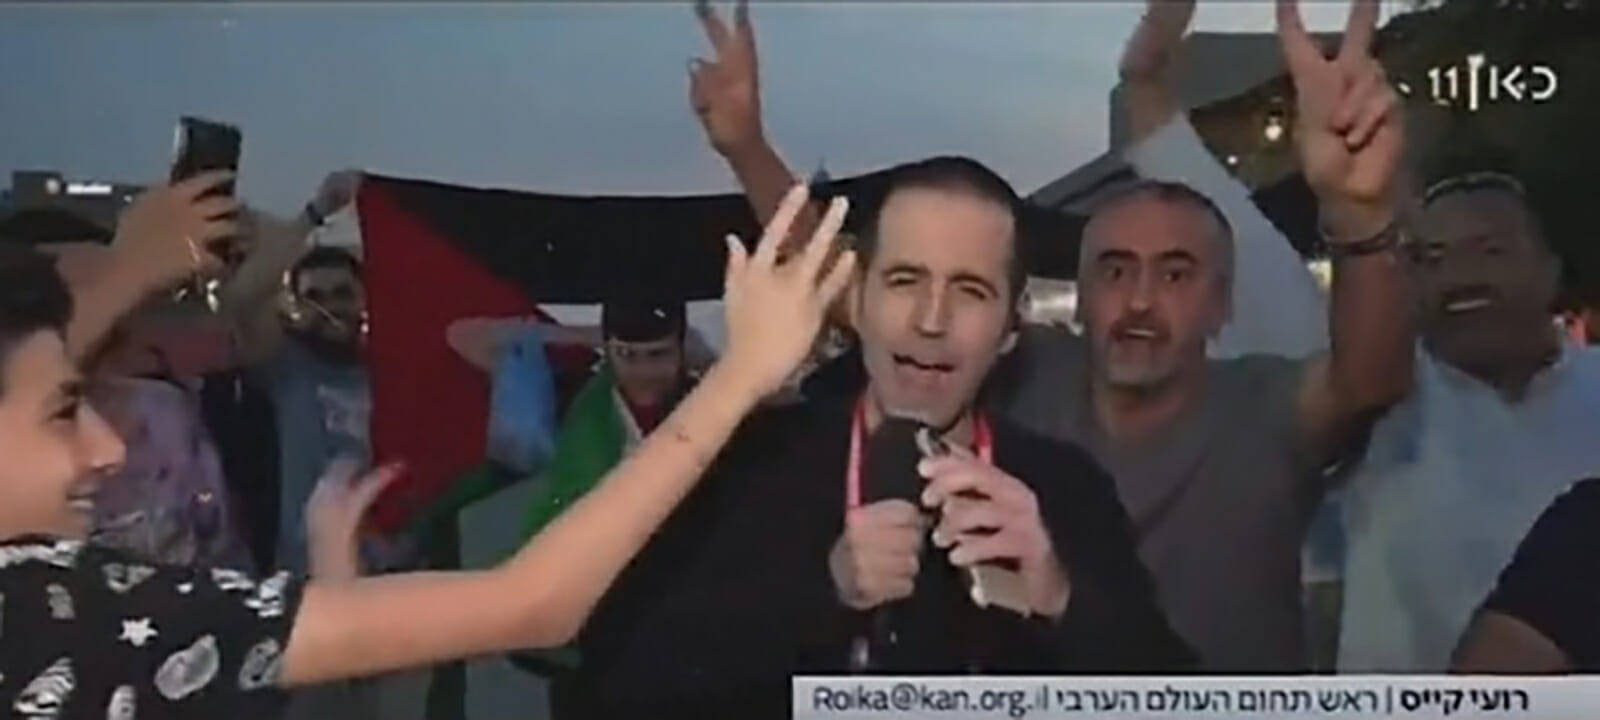 مشجع عربي مع قناة إسرائيلية watanserb.com